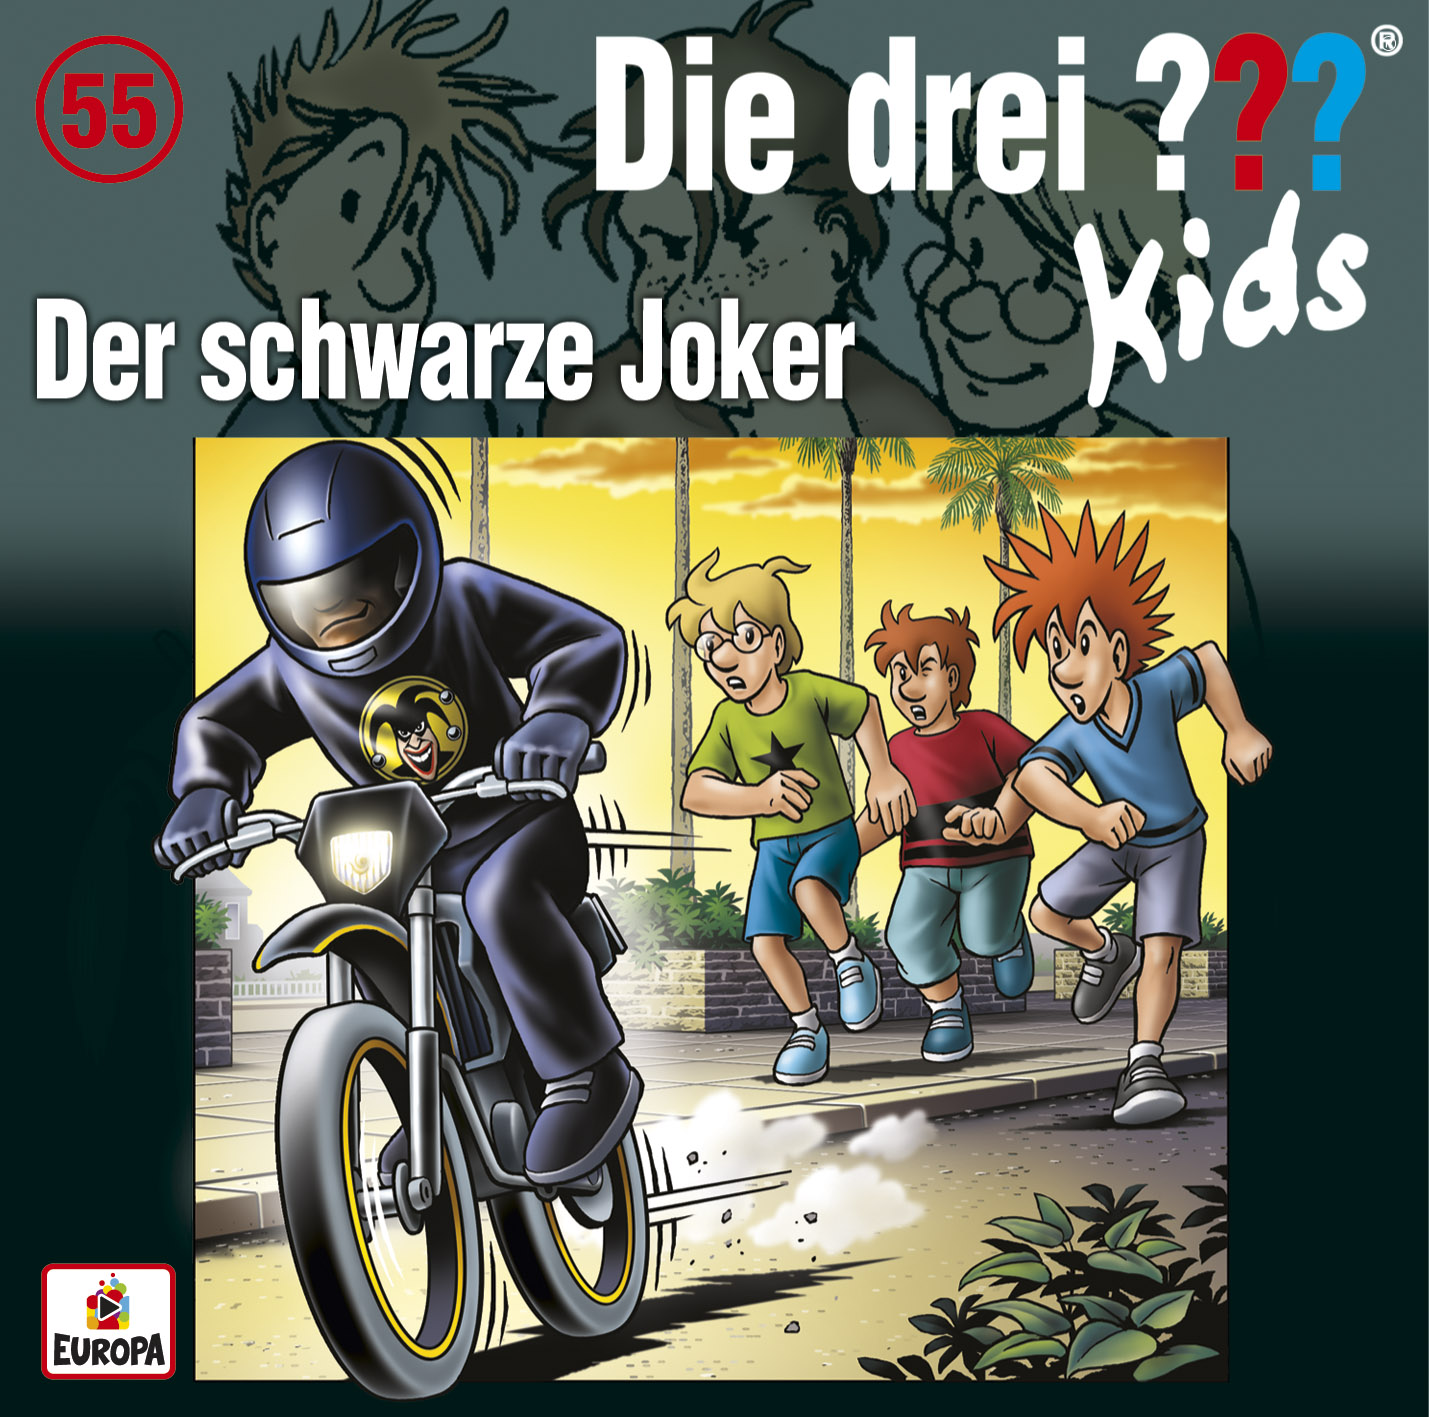 Die Drei ??? (Fragezeichen) Kids, Hörspiel-Folge 55: Der schwarze Joker